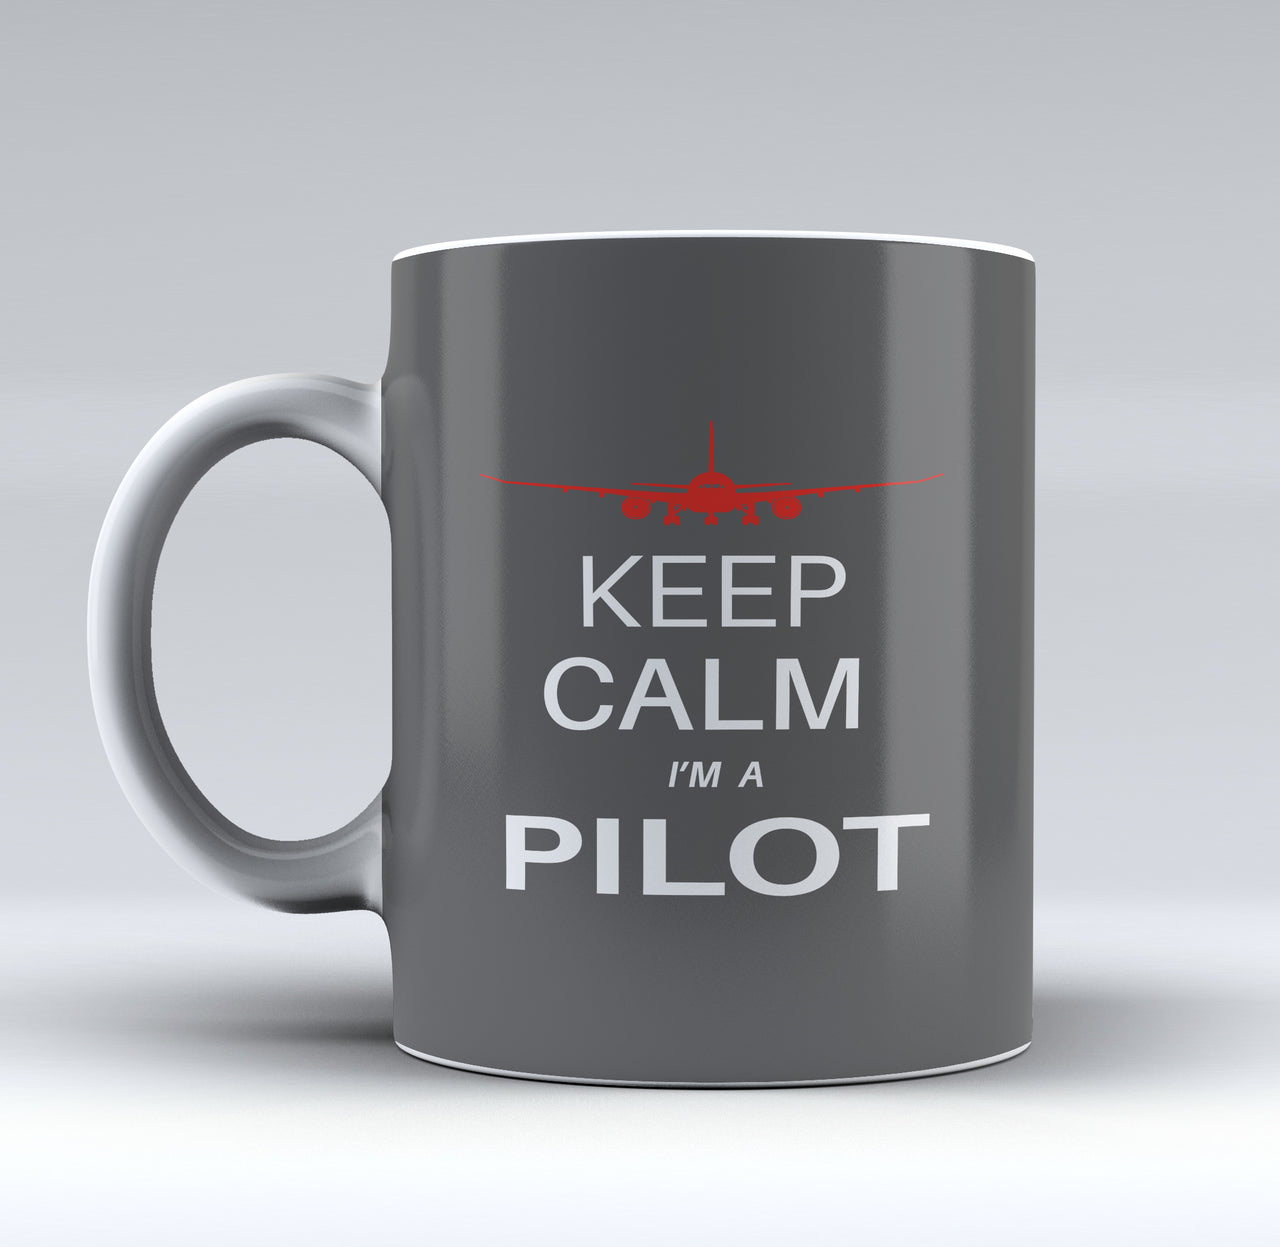 Keep Calm I'm a Pilot (777 Silhouette) Designed Mugs